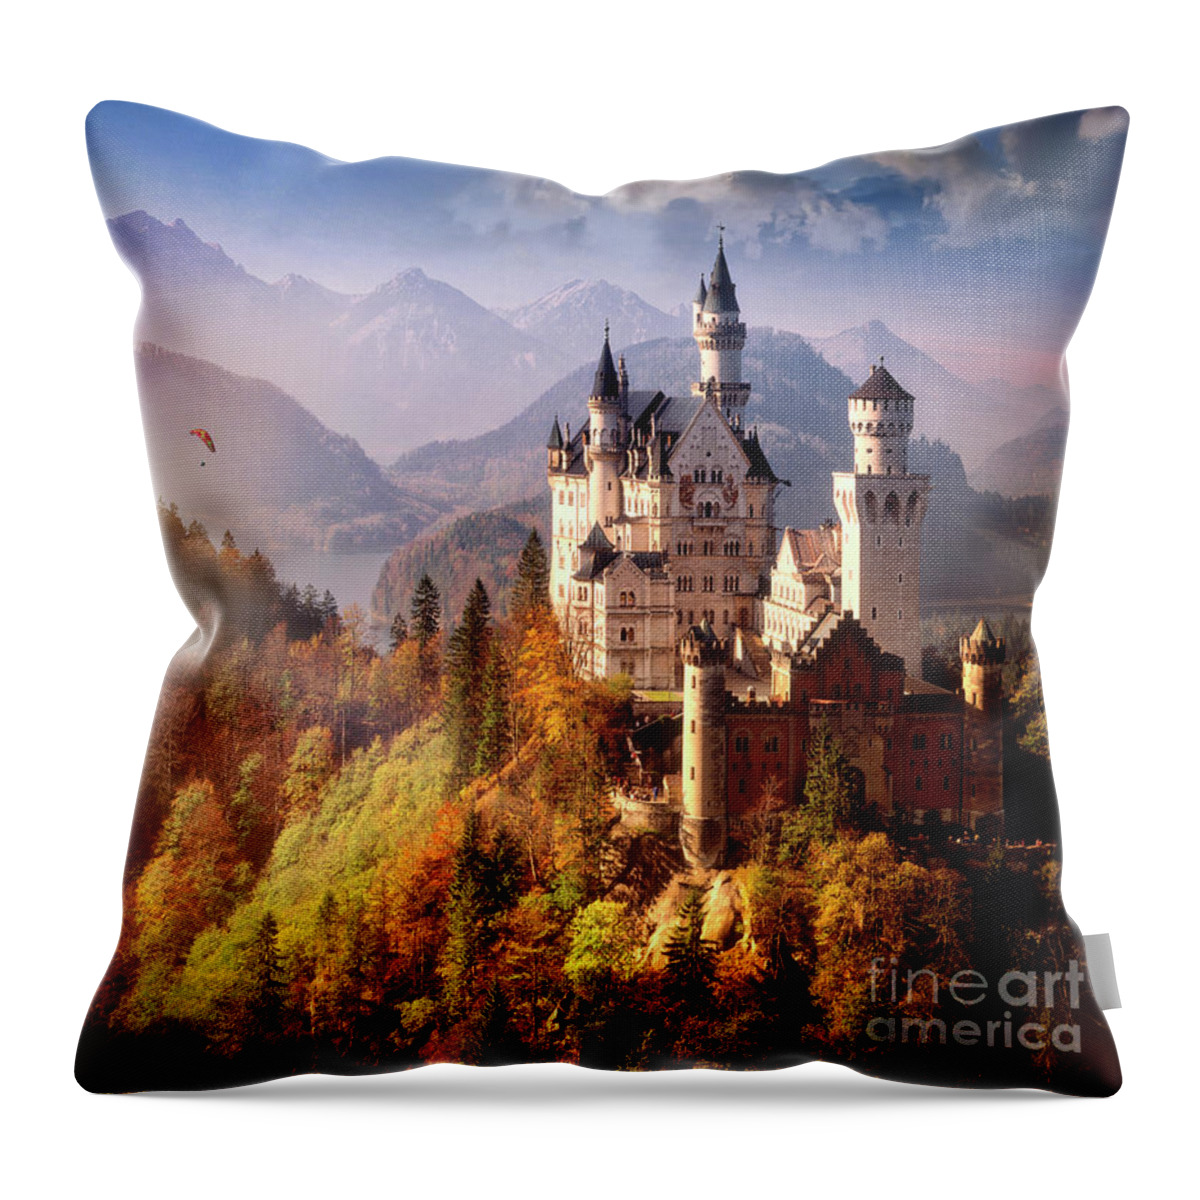 Nag906703a Throw Pillow featuring the photograph Schloss Neuschwanstein by Edmund Nagele FRPS